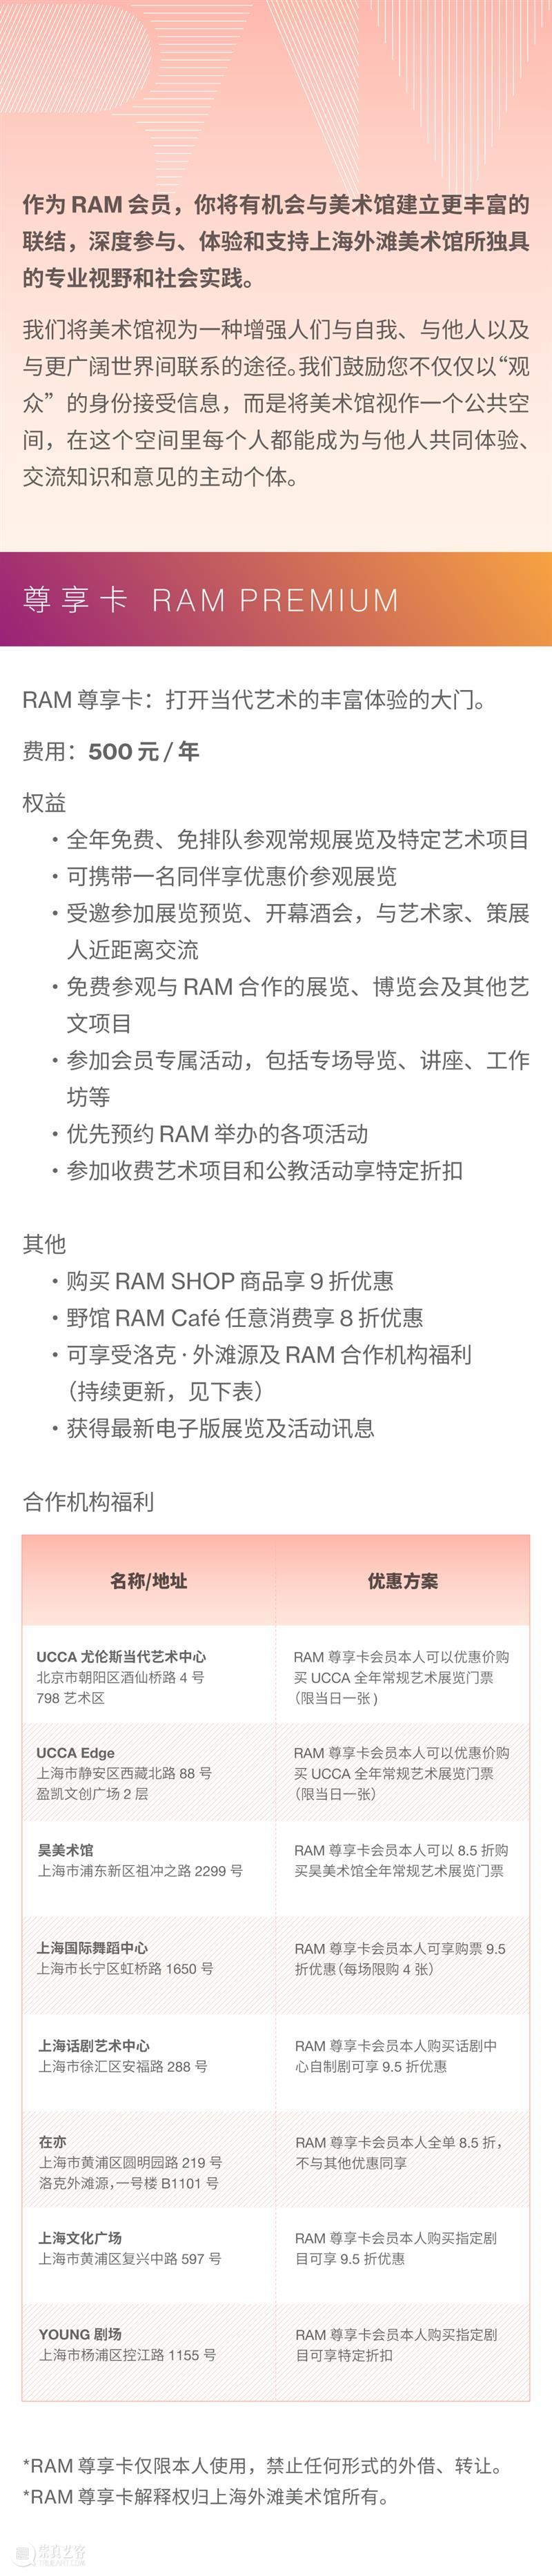 会员福利再升级丨RAM x YOUNG剧场 崇真艺客